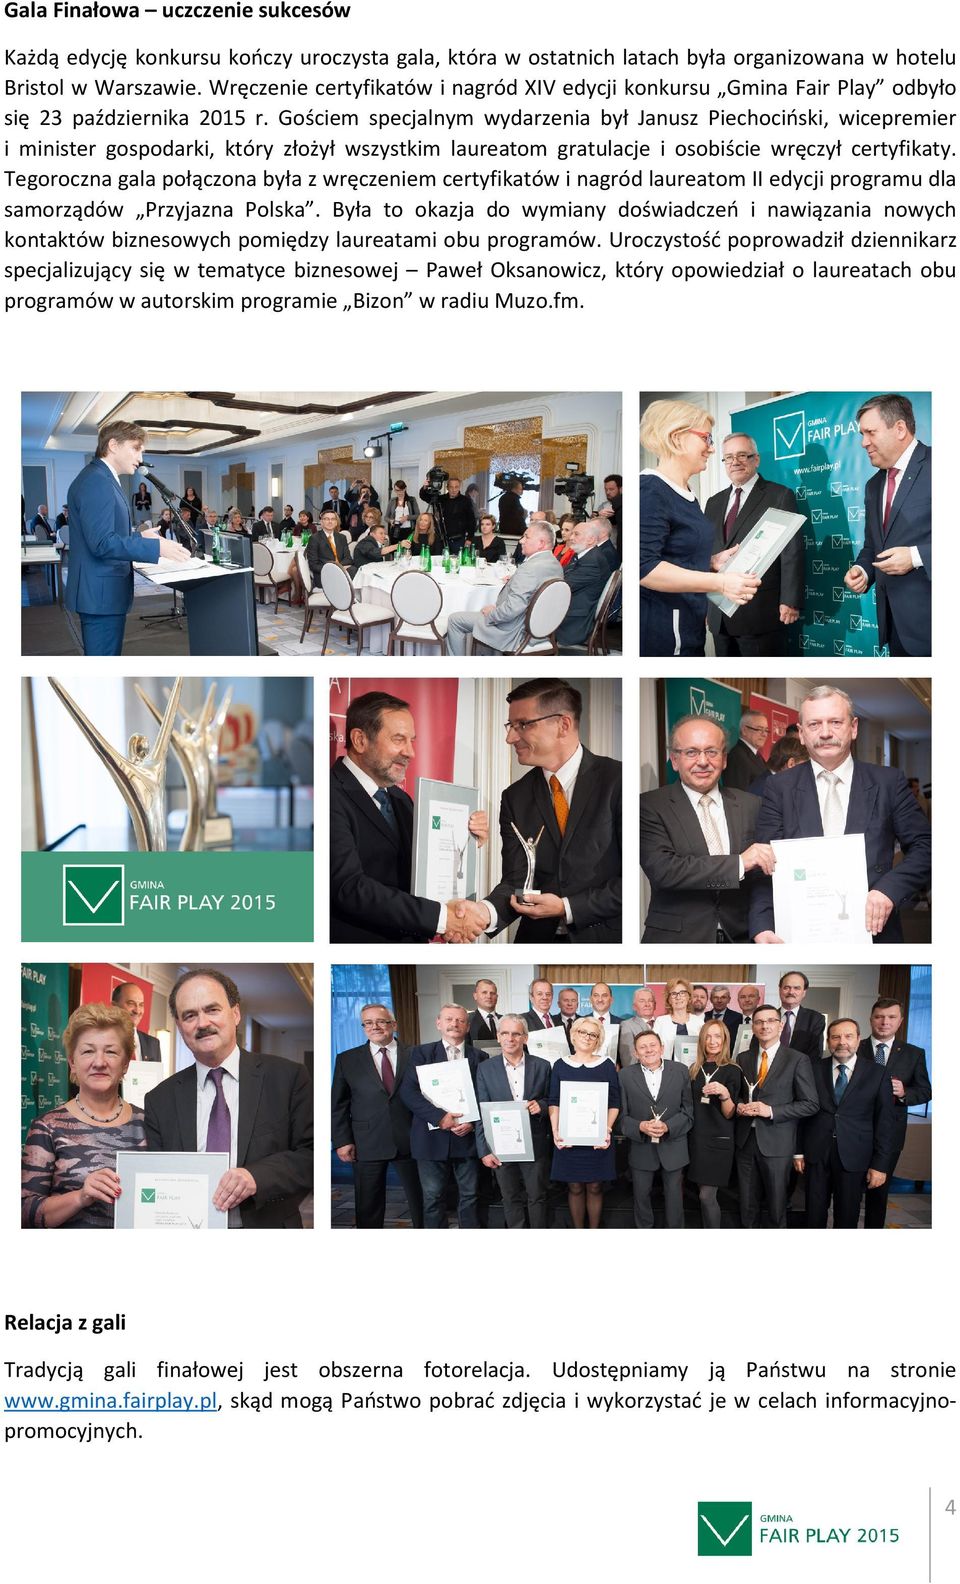 Gościem specjalnym wydarzenia był Janusz Piechociński, wicepremier i minister gospodarki, który złożył wszystkim laureatom gratulacje i osobiście wręczył certyfikaty.